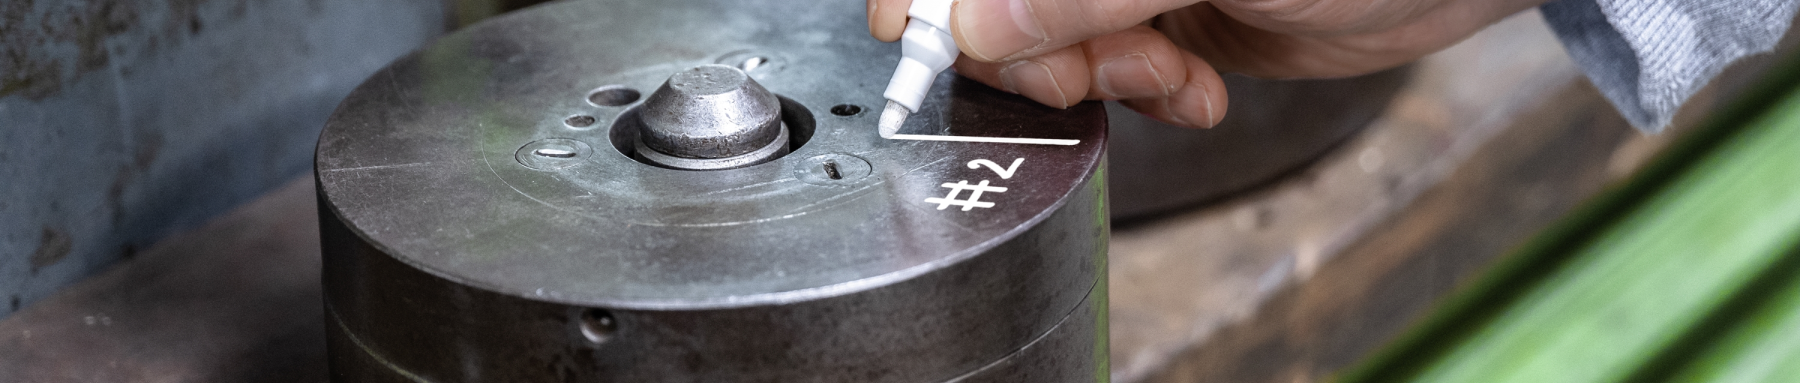 Eine Person beschriftet einen zylindrischen Metallgegenstand mit einem weißen Marker mit „#2“.